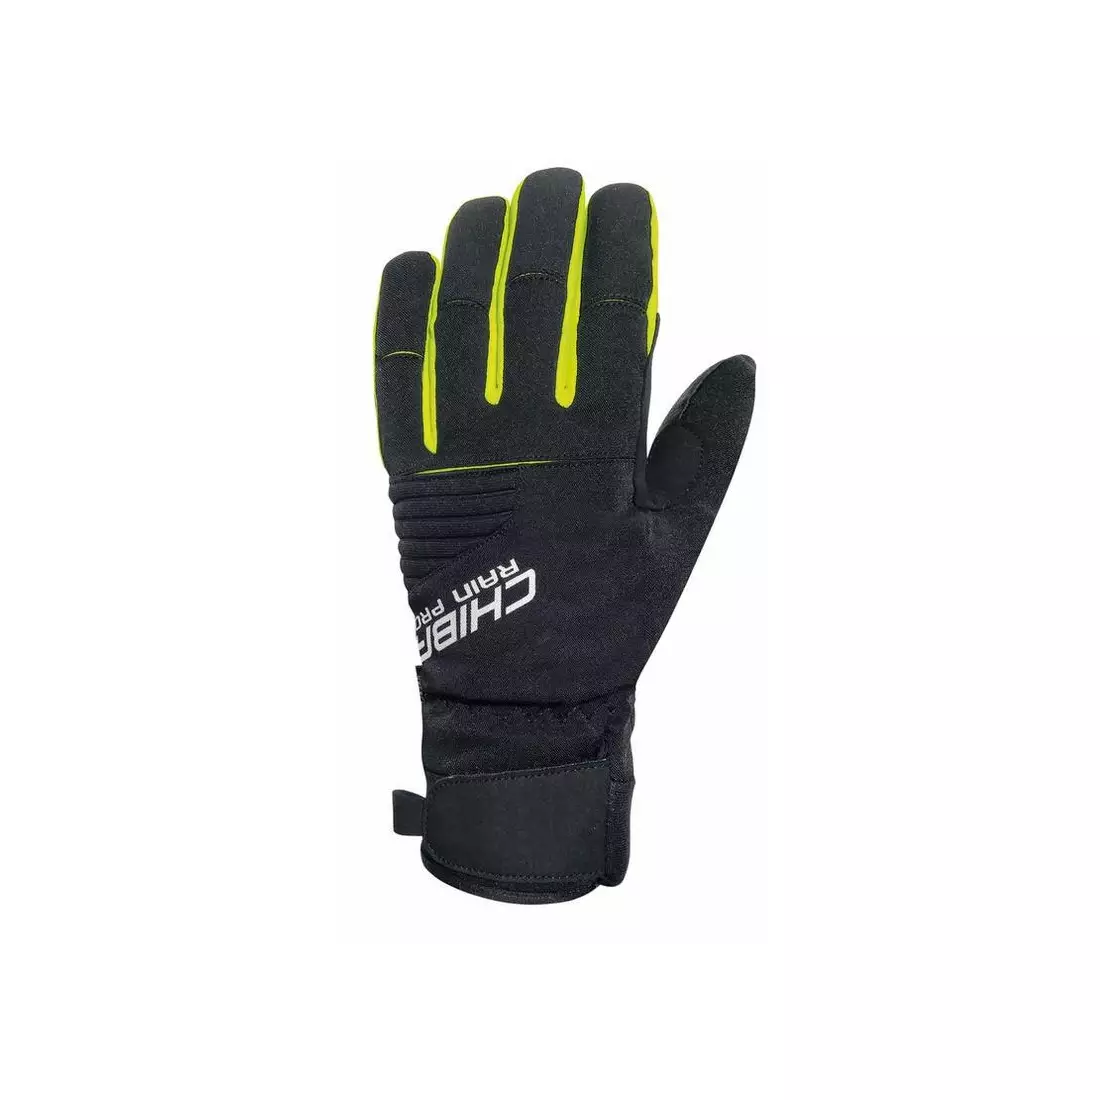 CHIBA RAIN TOUCH zimní cyklistické rukavice, černo-fluor 3120018